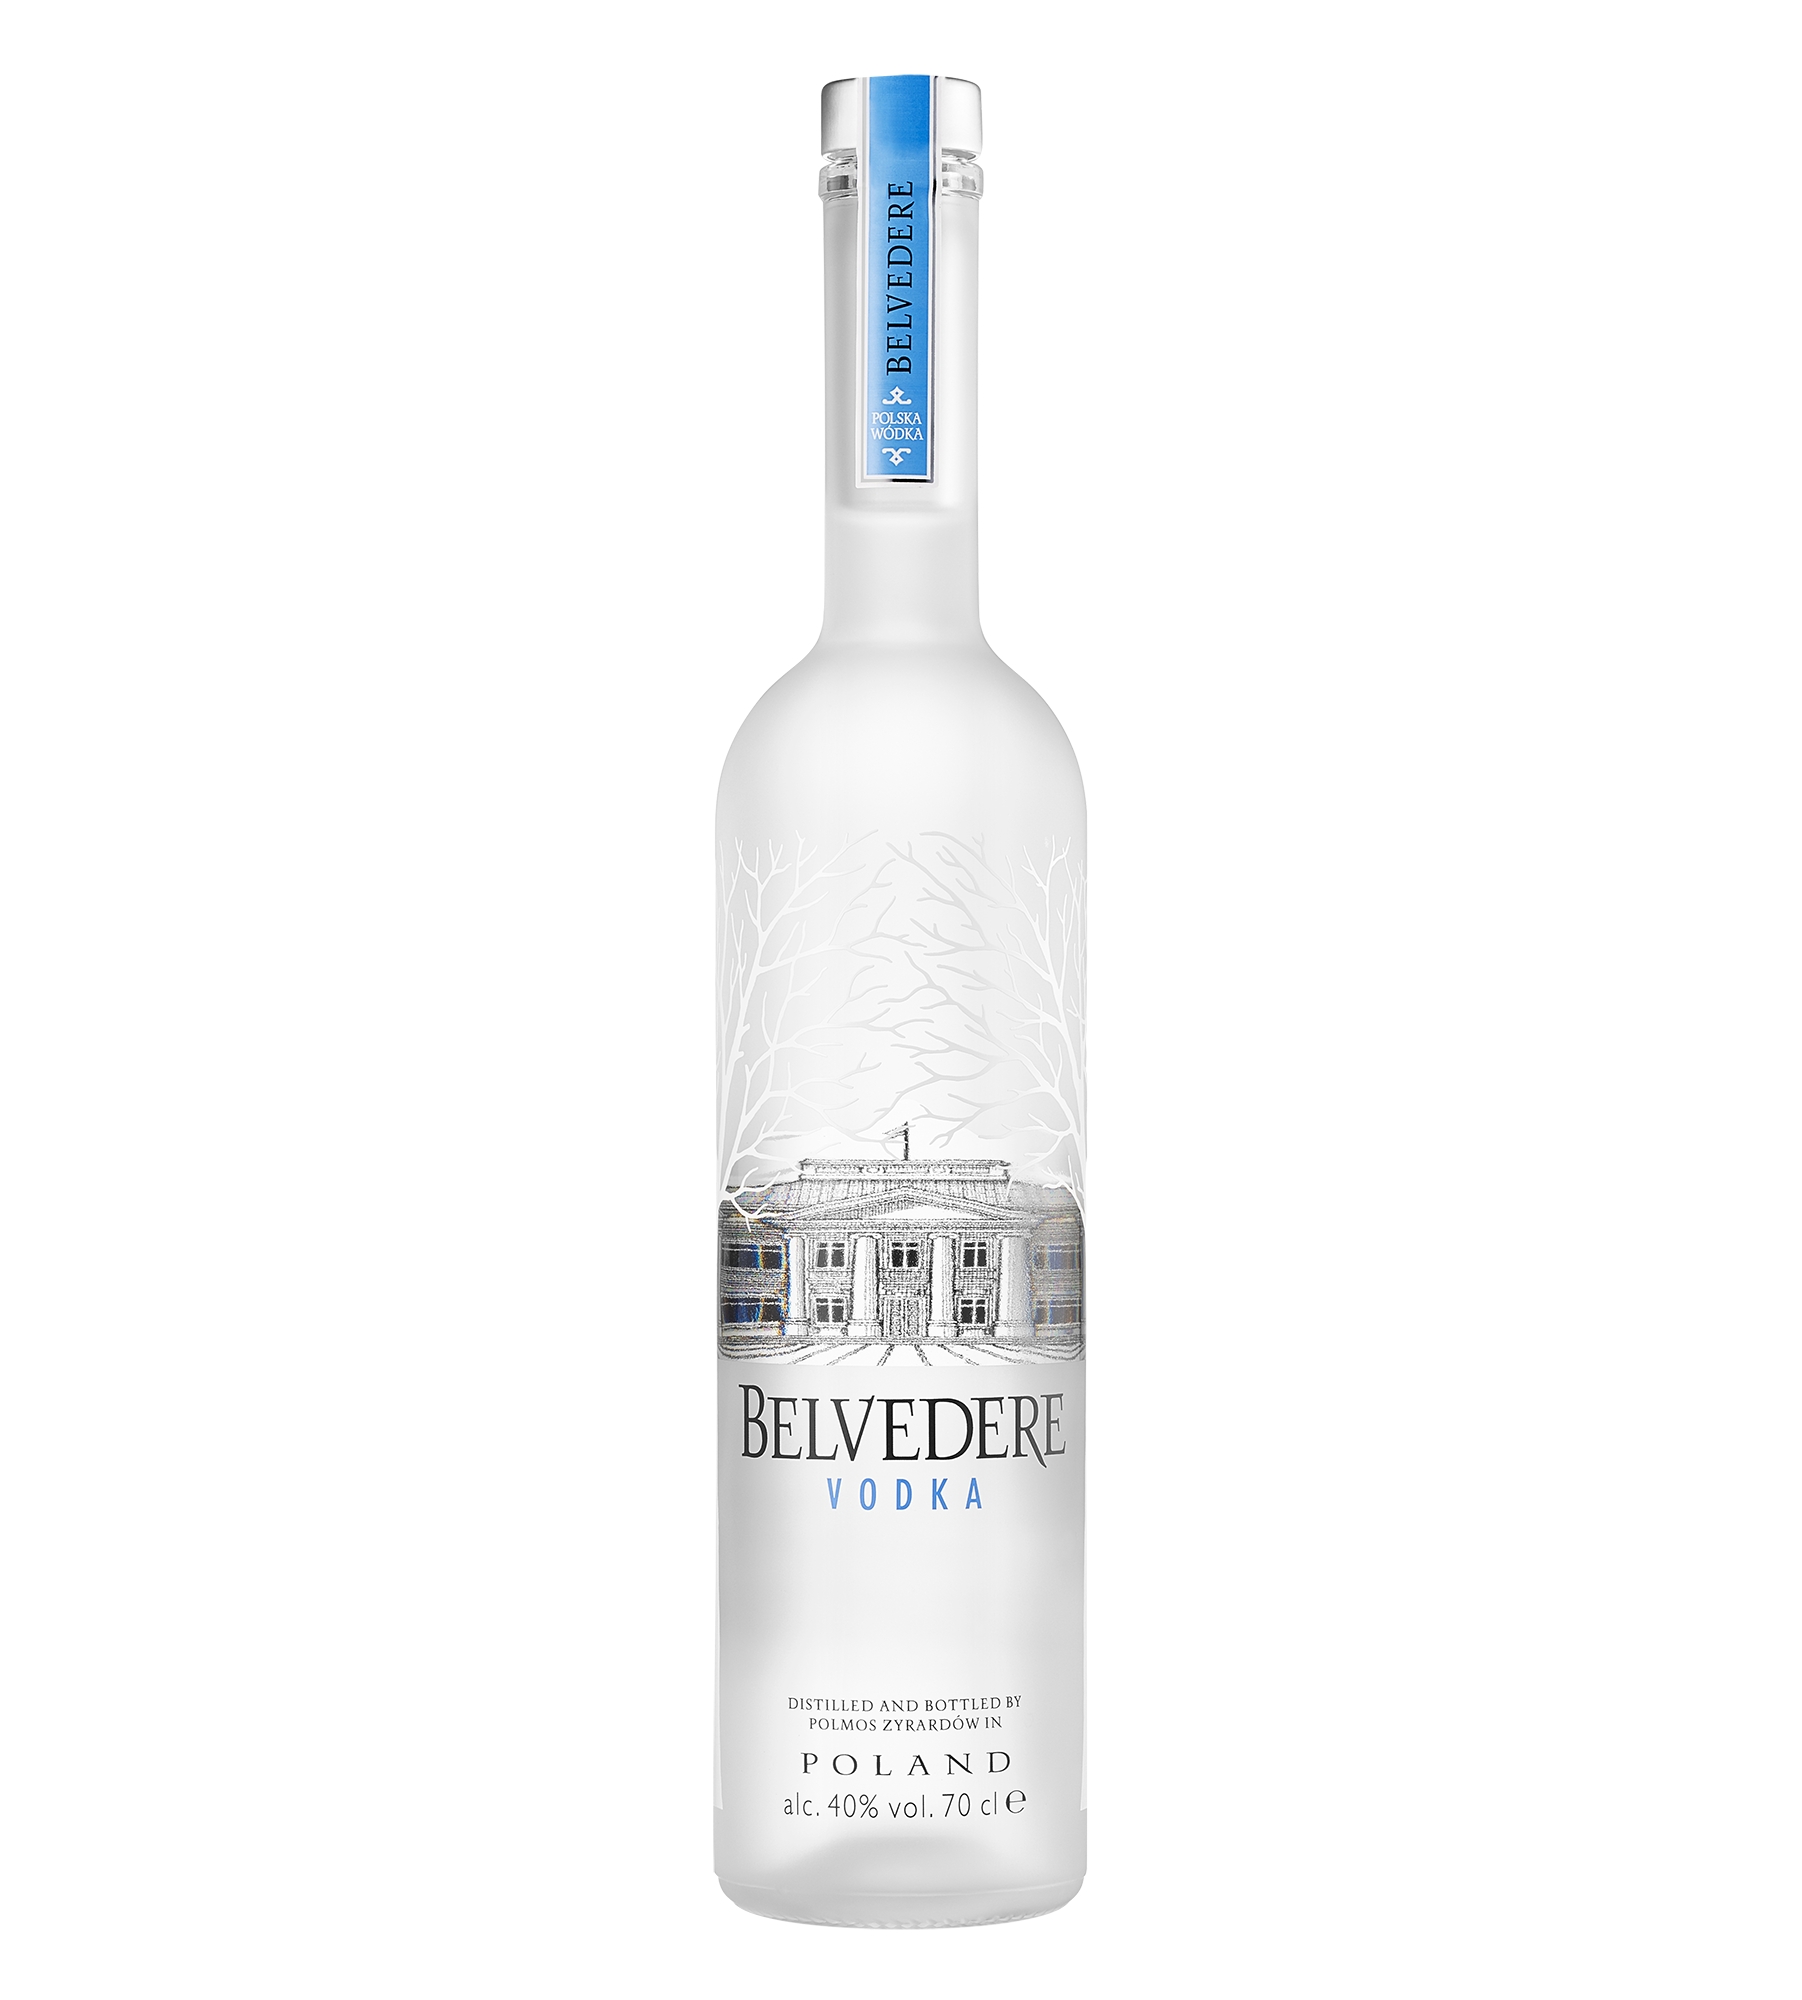 Belvedere - Heritage 176 - Superpremium Vodka - Luxury Limited